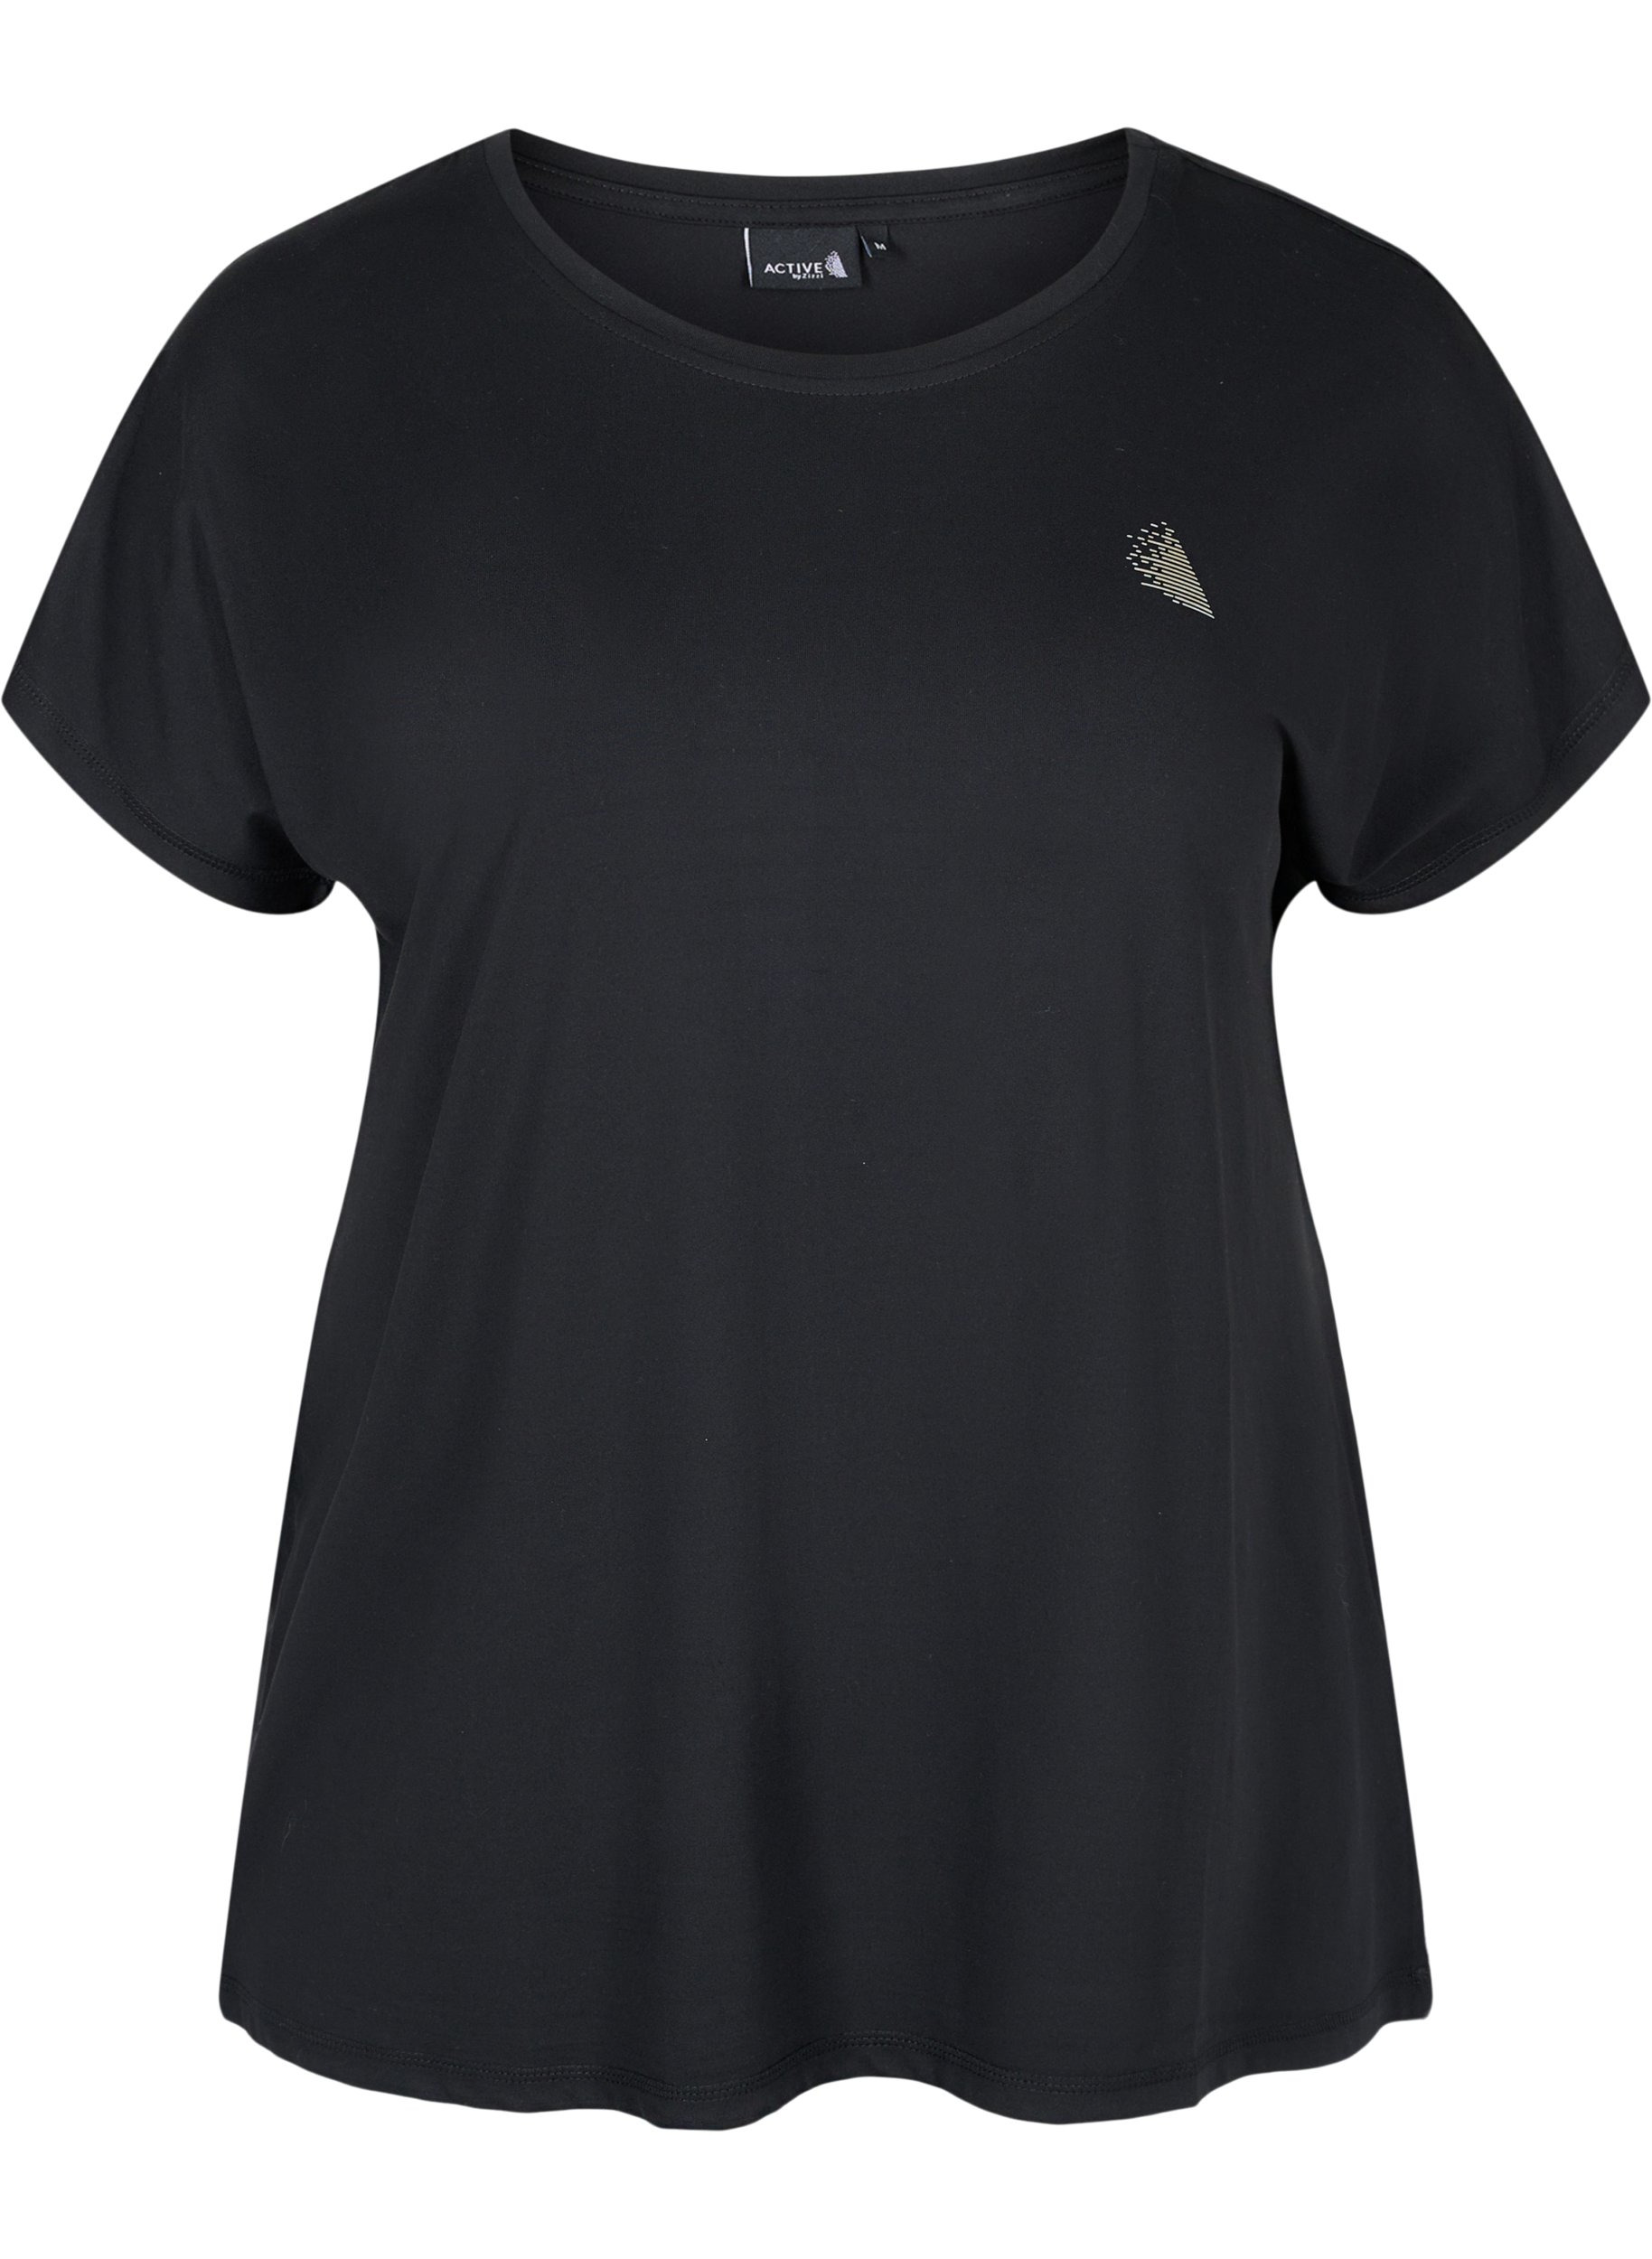 Einfarbiges Trainings-T-Shirt, Black